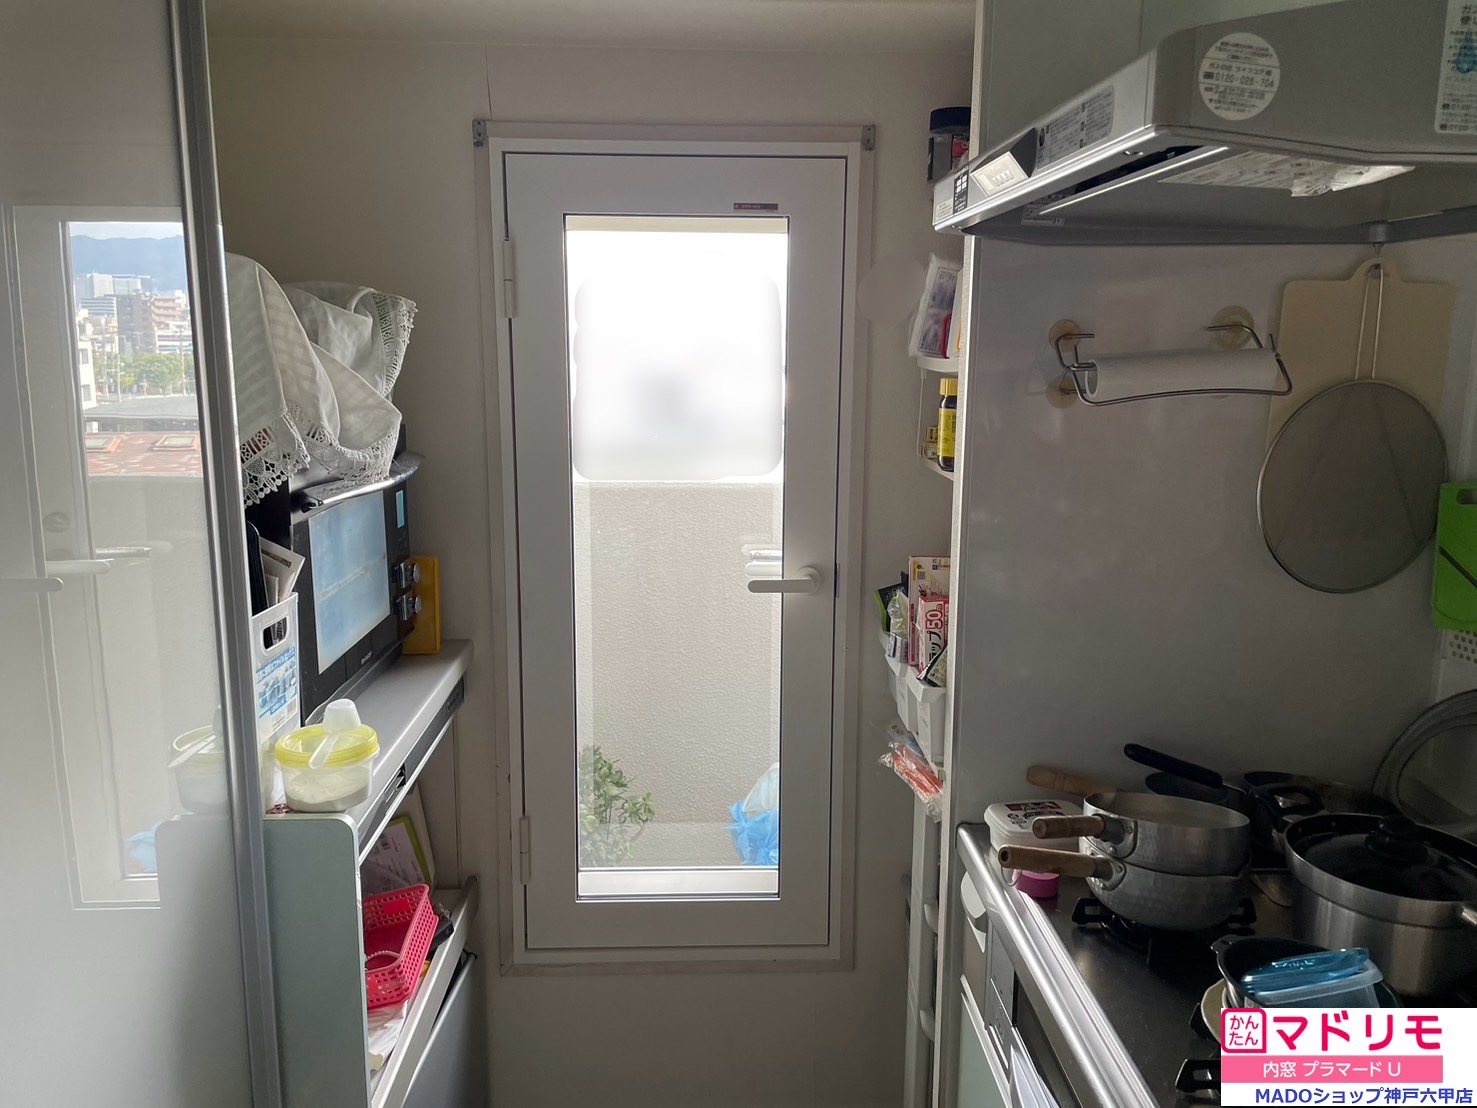 マンションにお住いのみなさま。キッチンに開き窓ありますか？